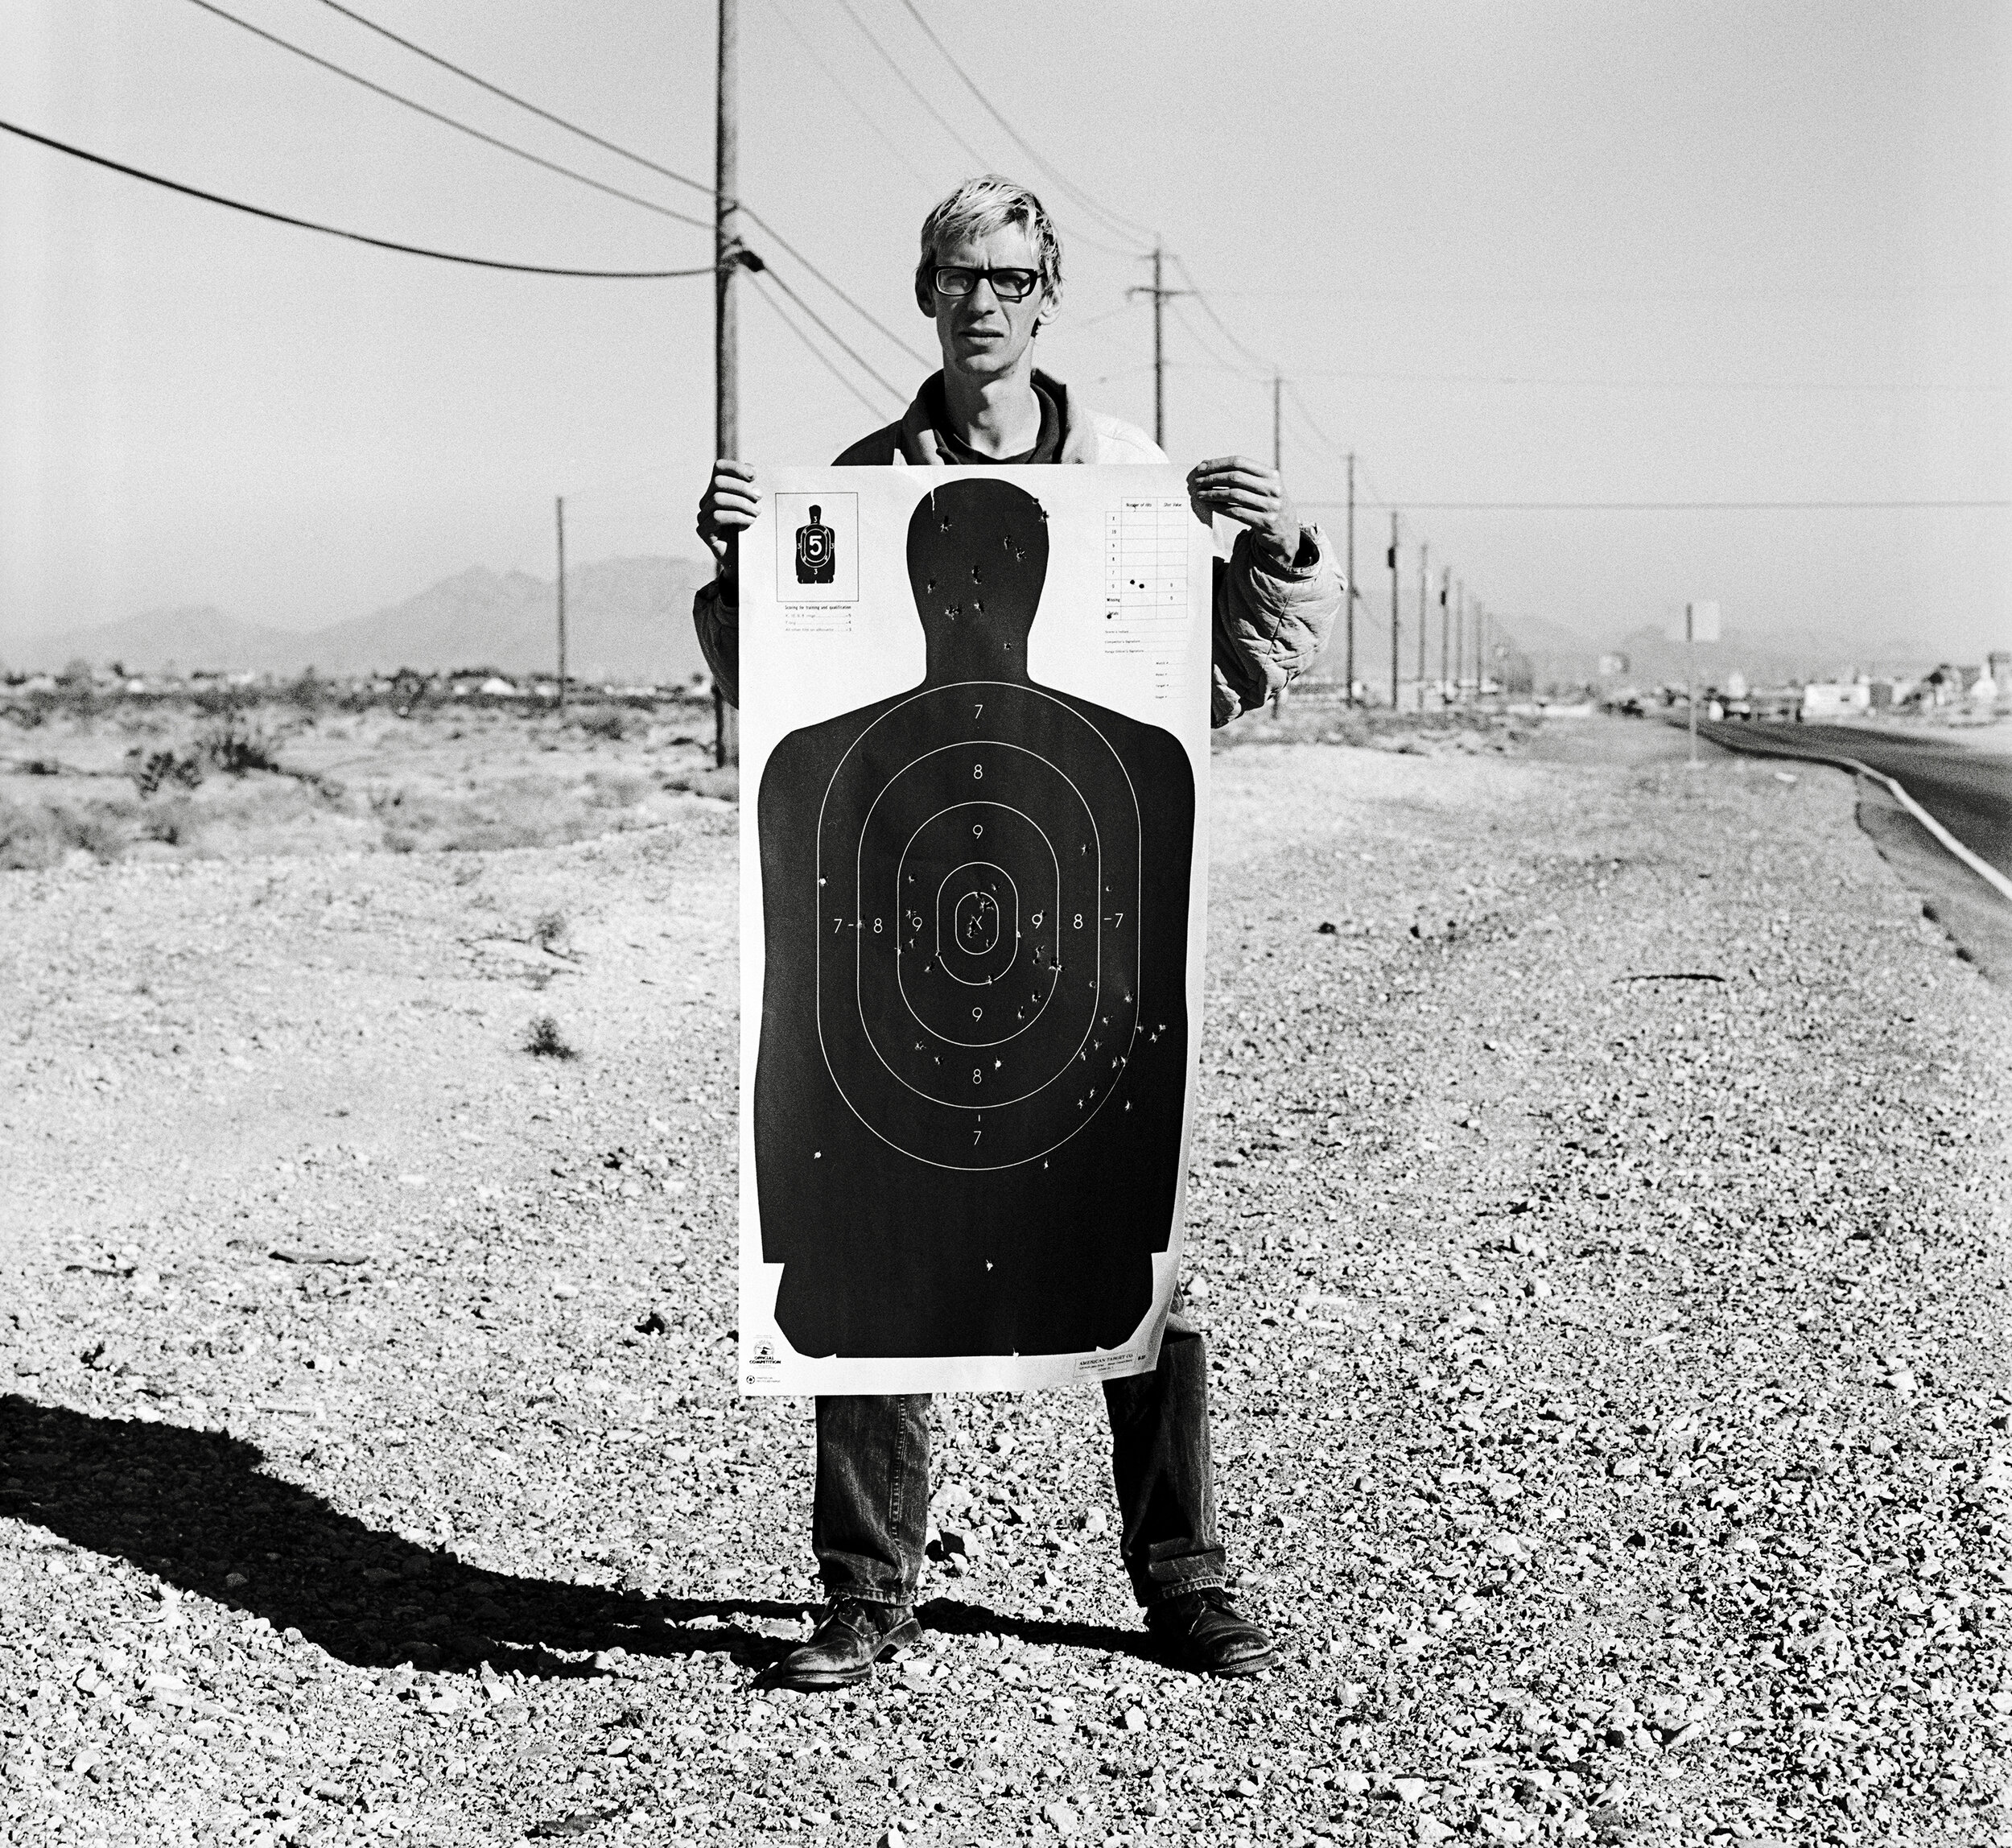 Flake holding a target, Las Vegas, 1997.jpg